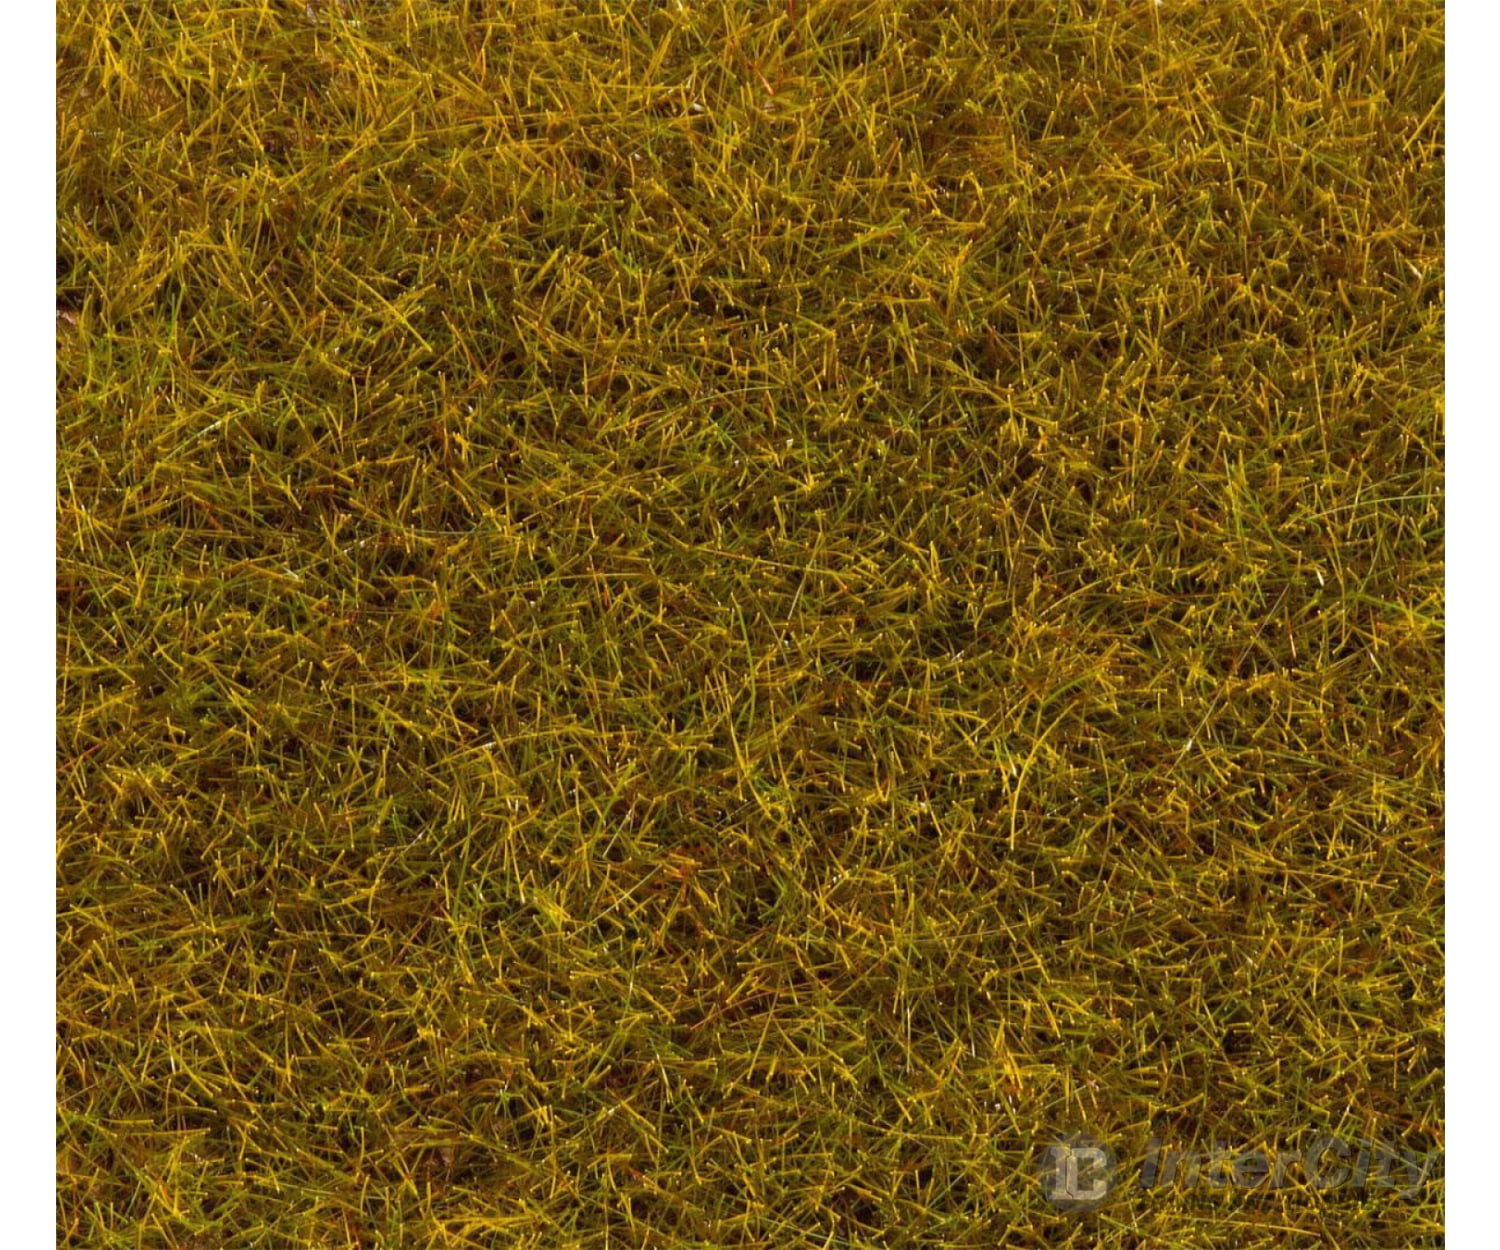 Faller 170770 Ho Tt N Premium Ground Cover Fibres 6 Mm Large Pack Grass-Green 80 G Static Grass &